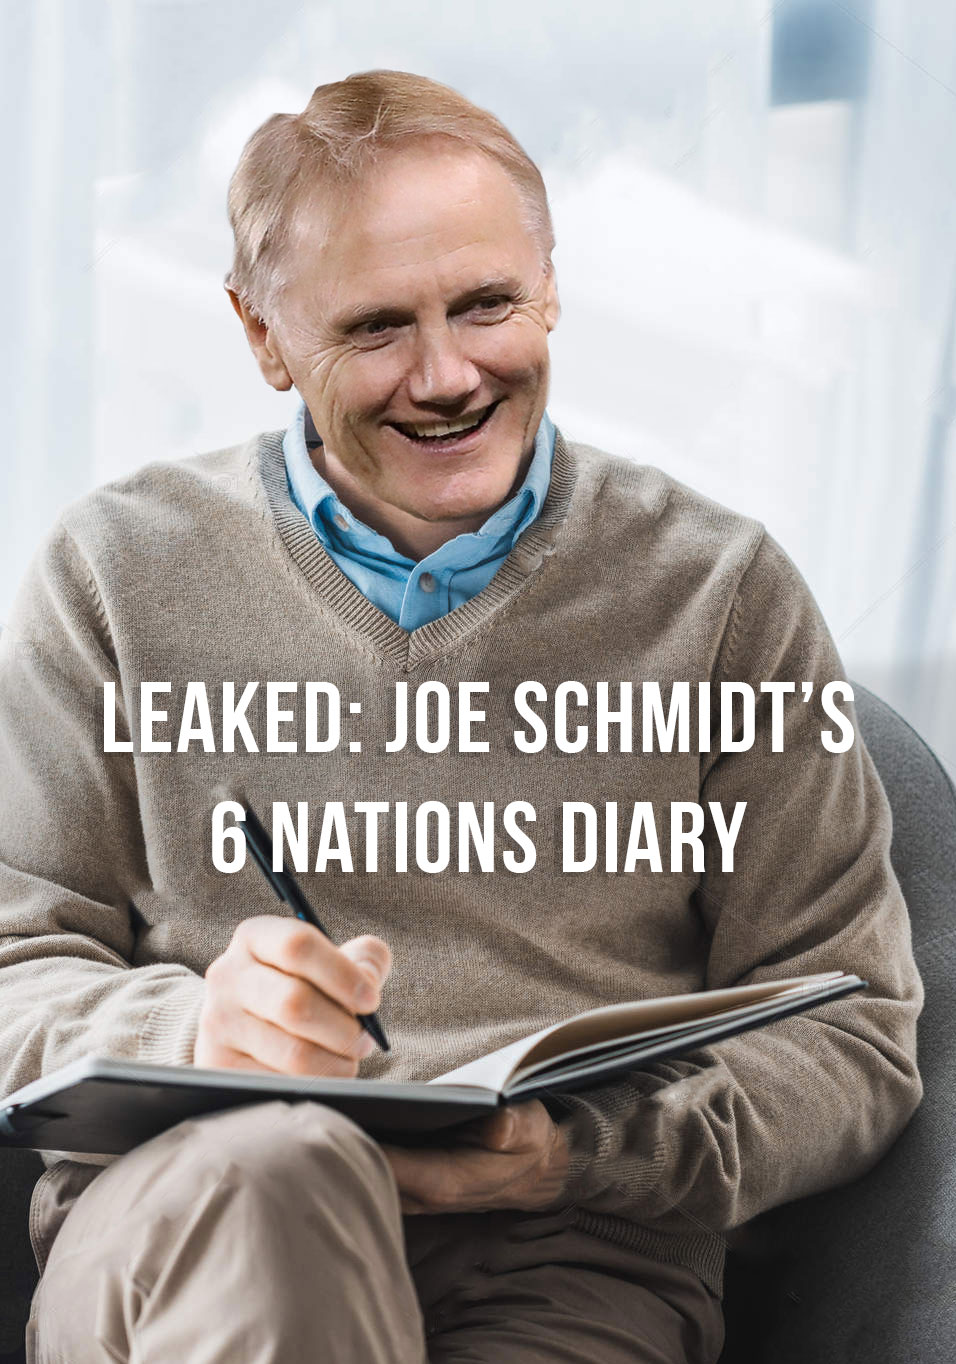 LEAKED: Joe Schmidt’s 6 Nations Diary